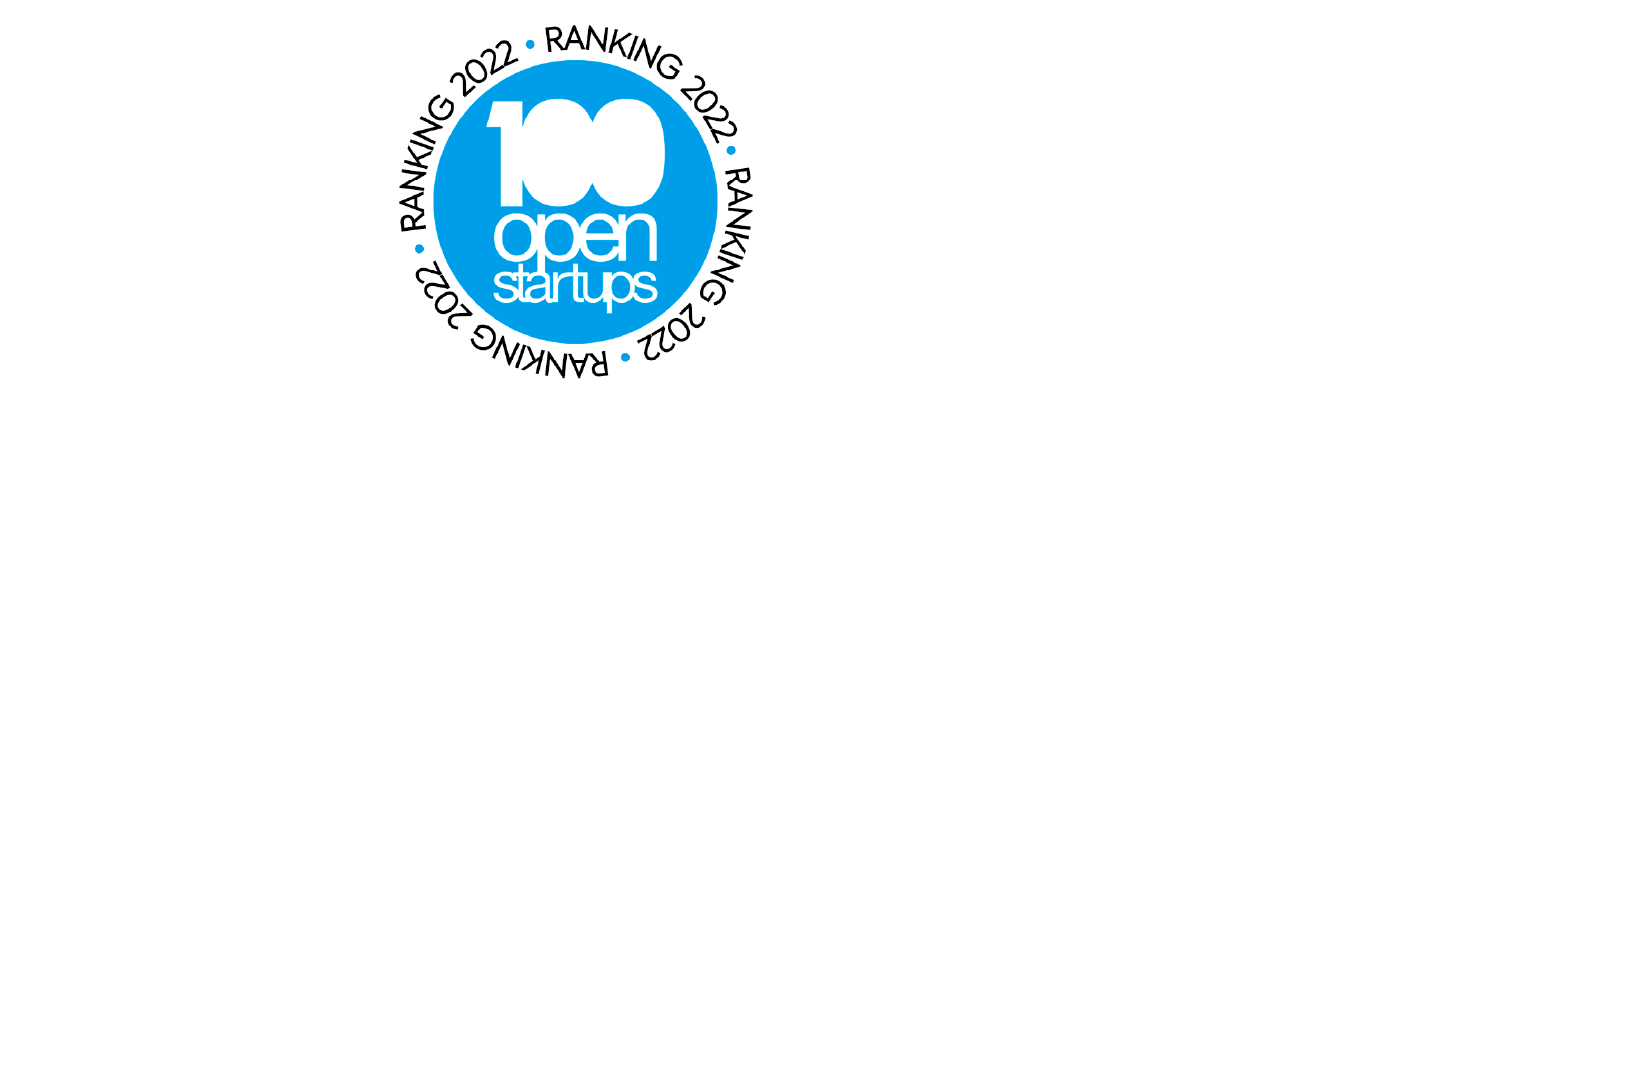 Logo Open 100 startups top 10 ranking legaltechs e top 10 ranking big data